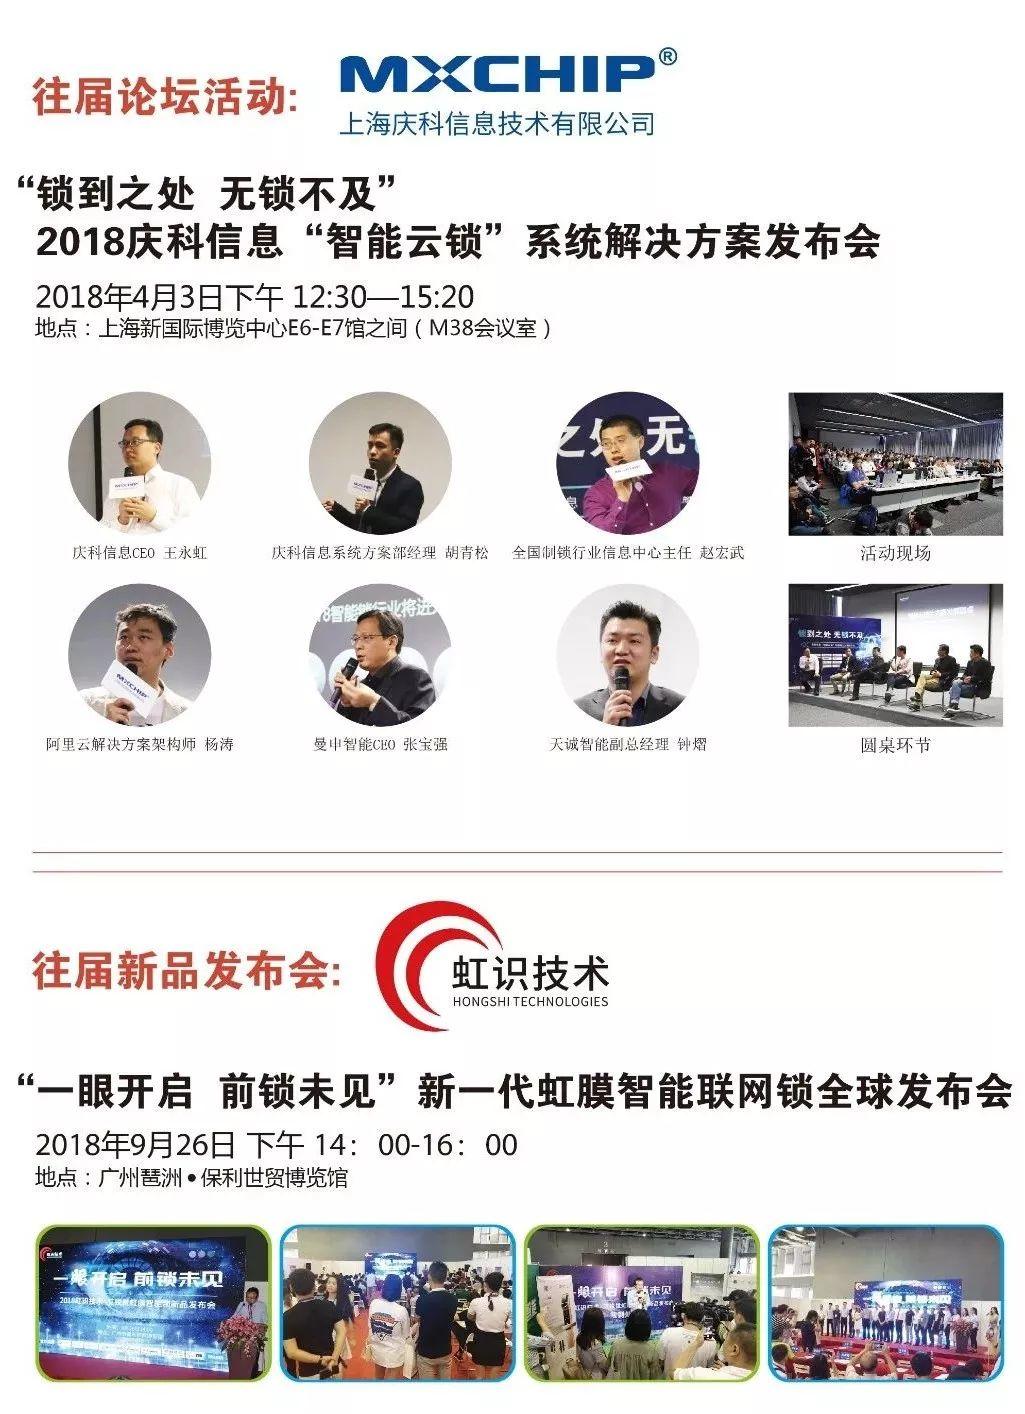 2019上海锁博会：年前火热报名进行中！